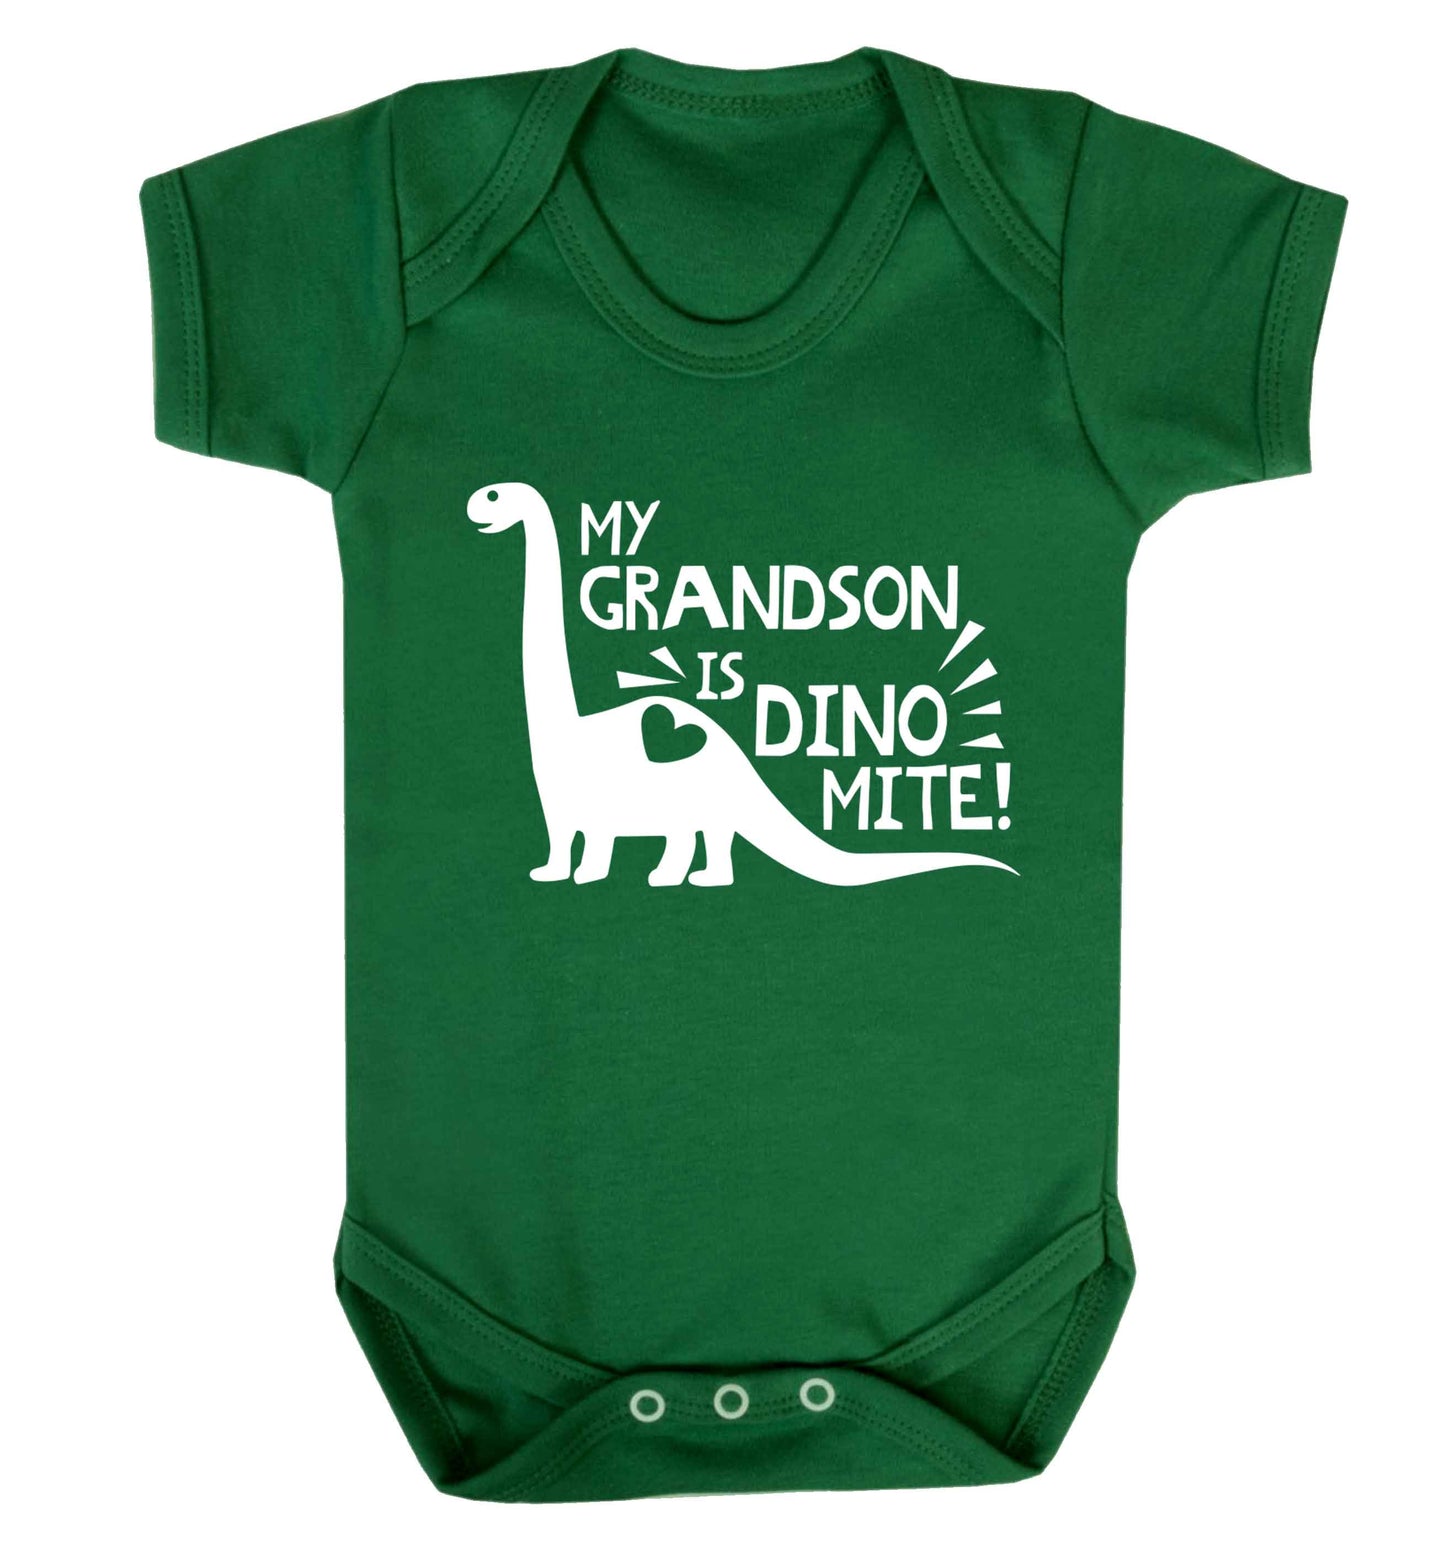 My grandson is dinomite! Baby Vest green 18-24 months